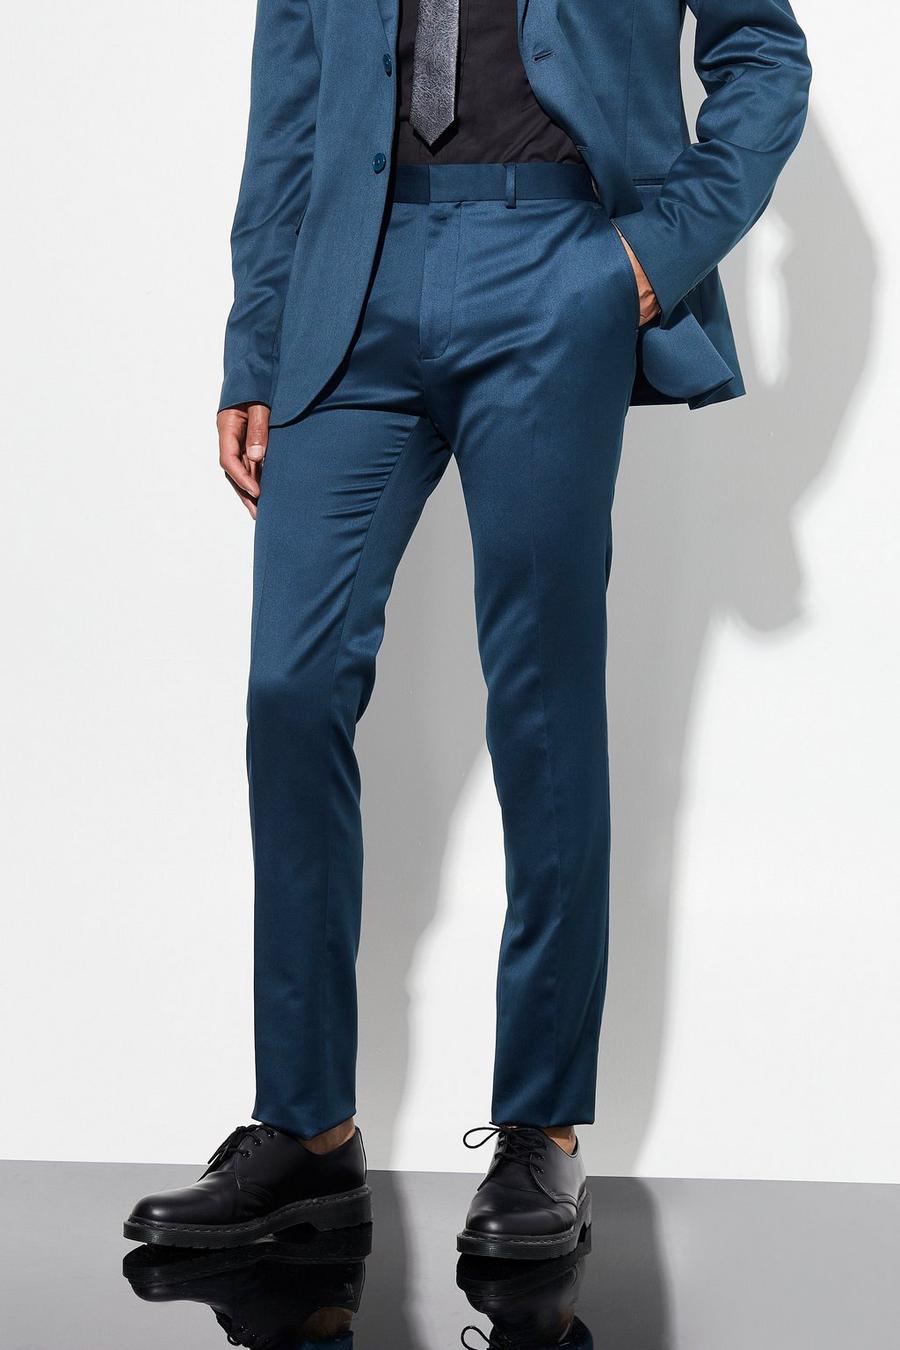 Pantalón Tall pitillo de traje pitillo y raso, Navy azul marino